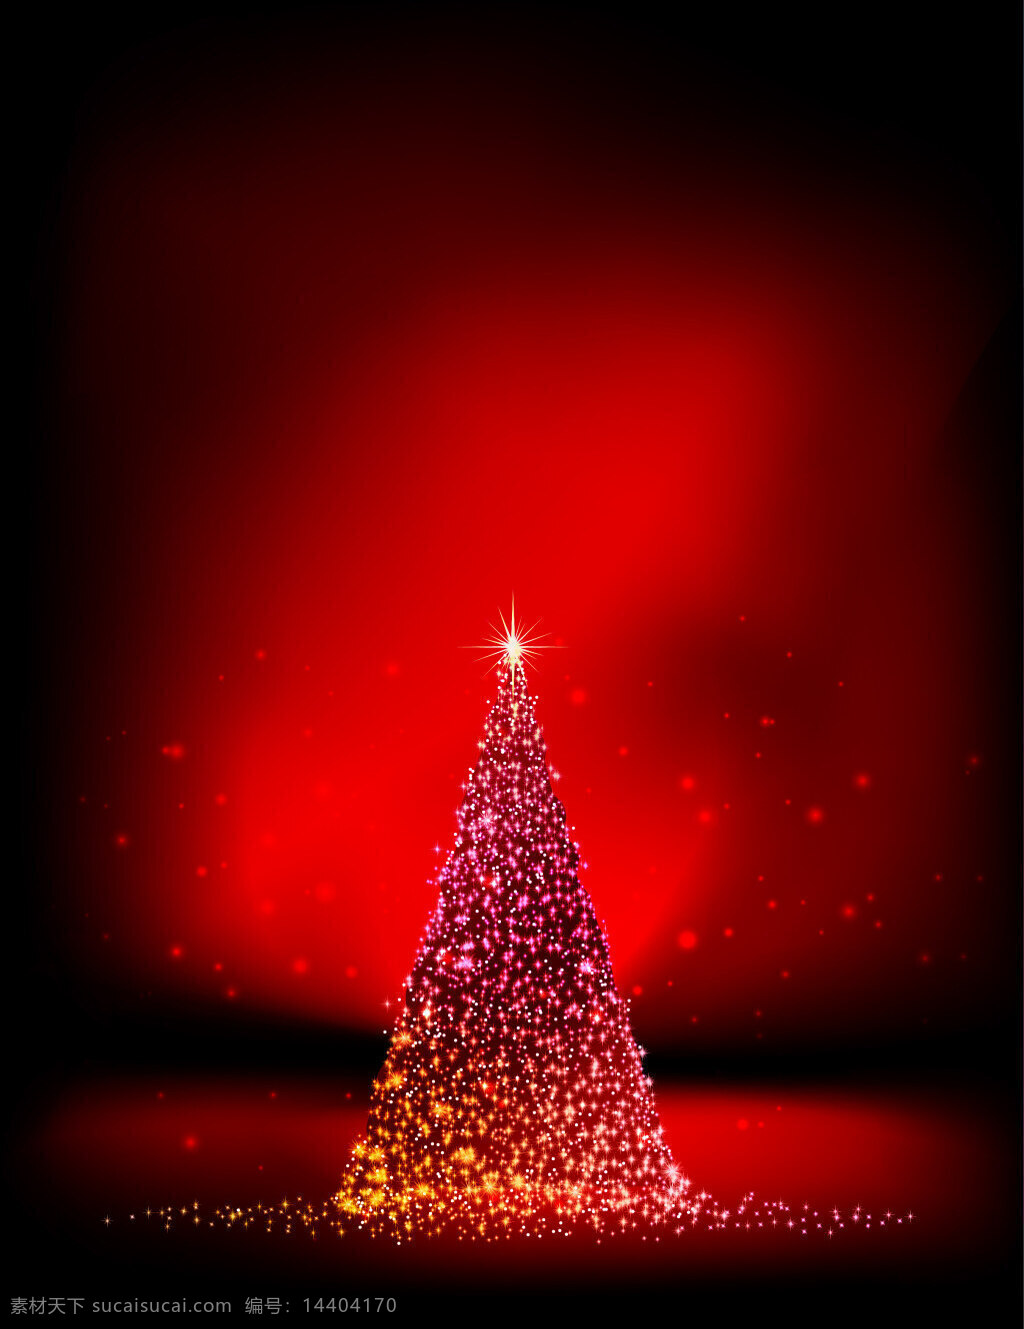 矢量 梦幻 炫 光 圣诞树 背景 红色 节日 炫光 质感 星光 圣诞节 海报